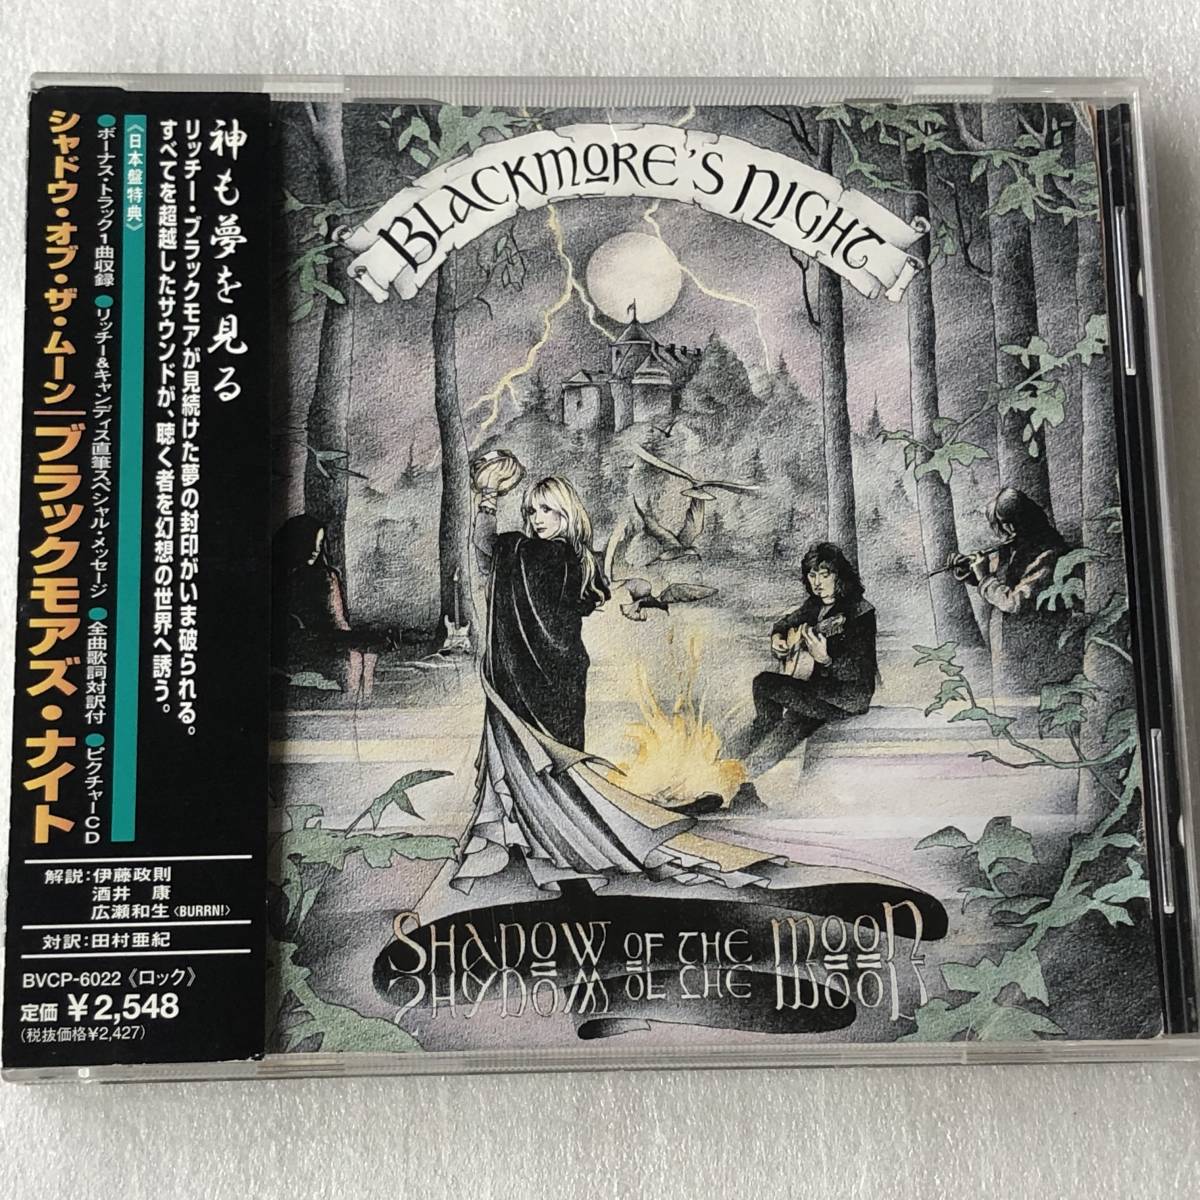 中古CD Blackmore's Night ブラックモアズ・ナイト/Shadow of The Moon 1st(1997年 BVCP-6022) 英国産HR/HM,女声メタル・ロック系_画像1